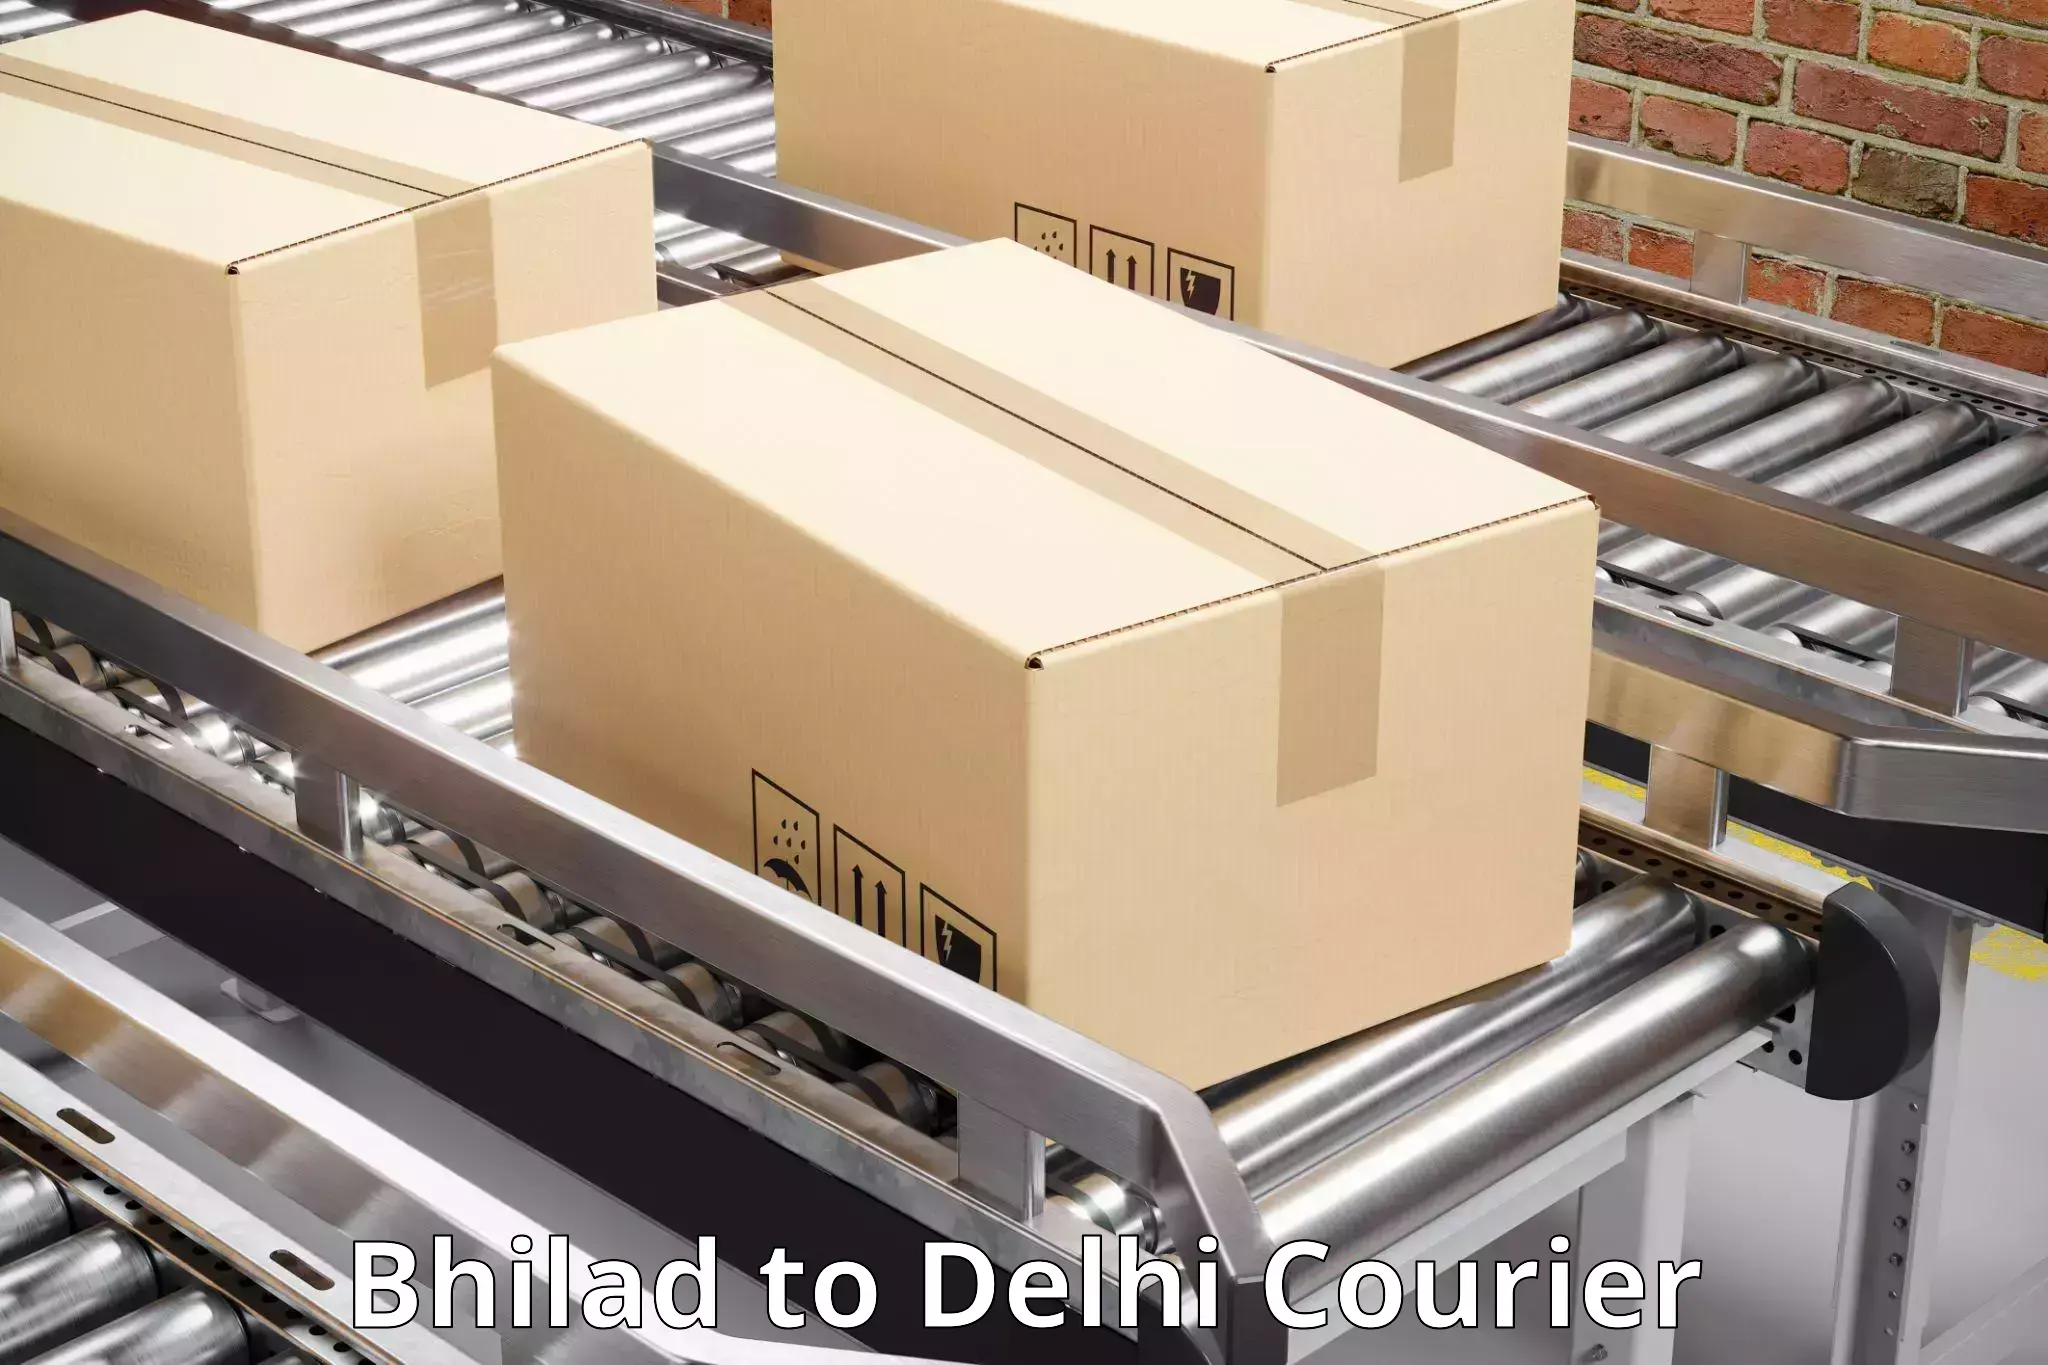 Express logistics service Bhilad to East Delhi